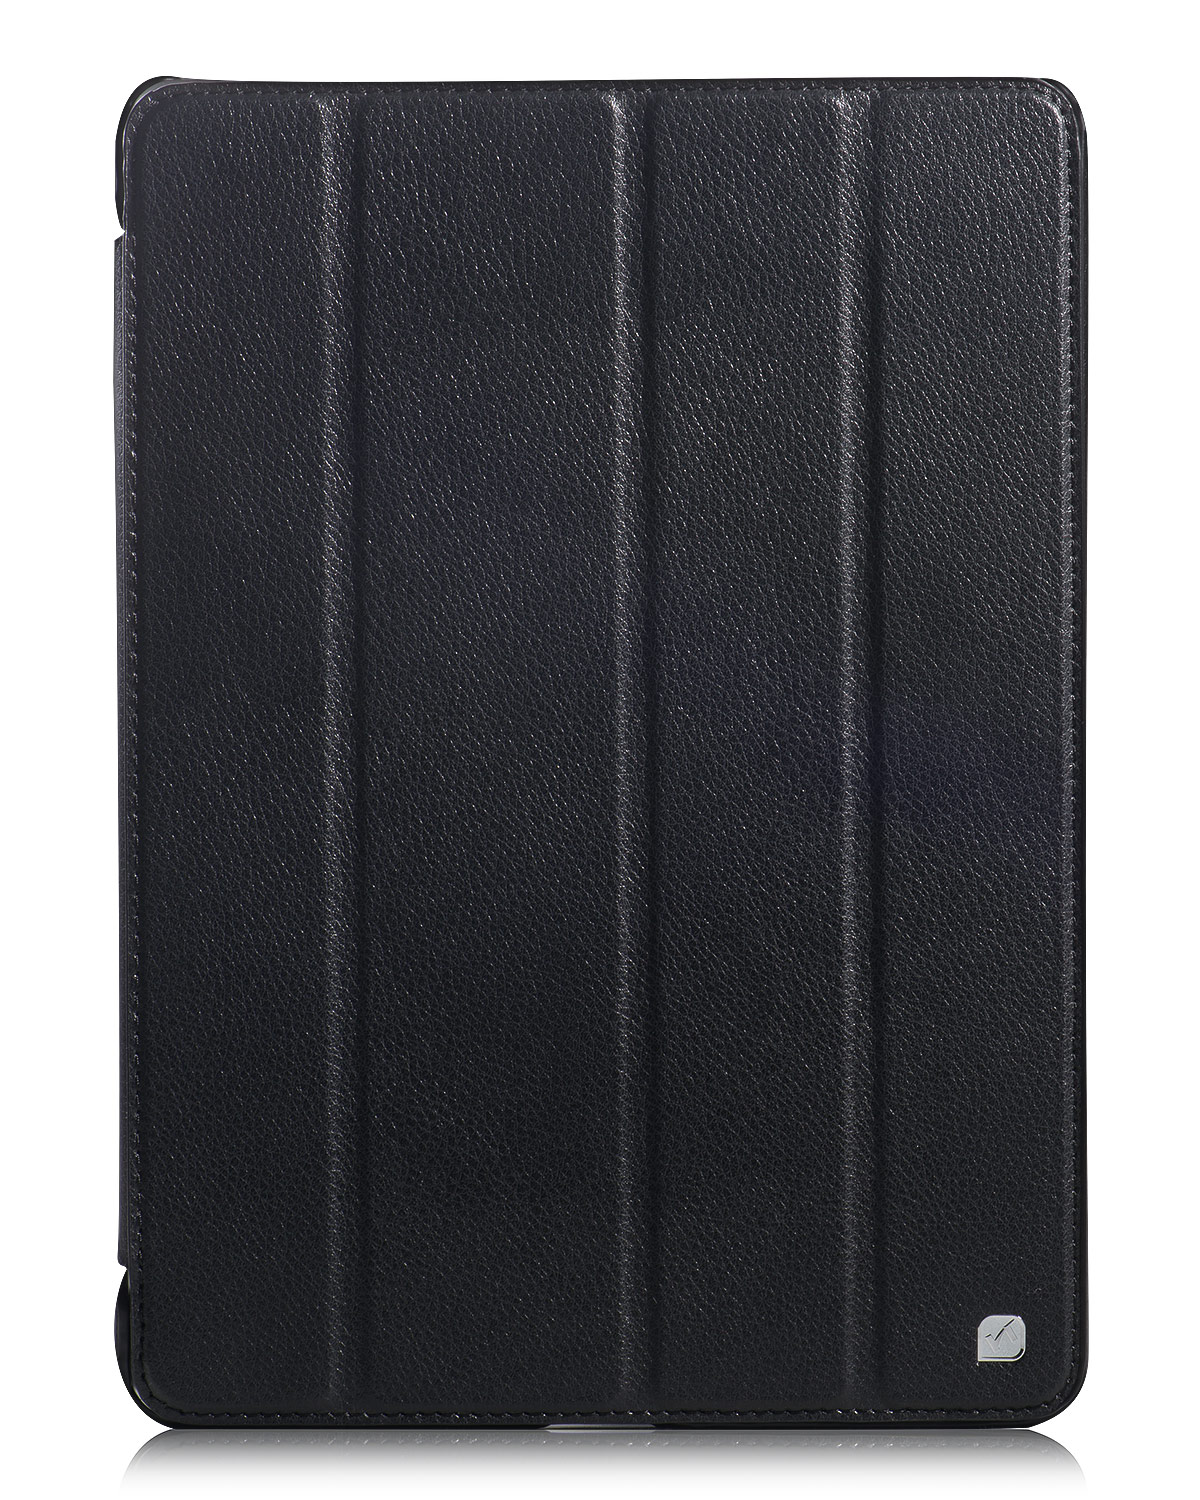 Чехол HOCO Duke series черный для iPad Air